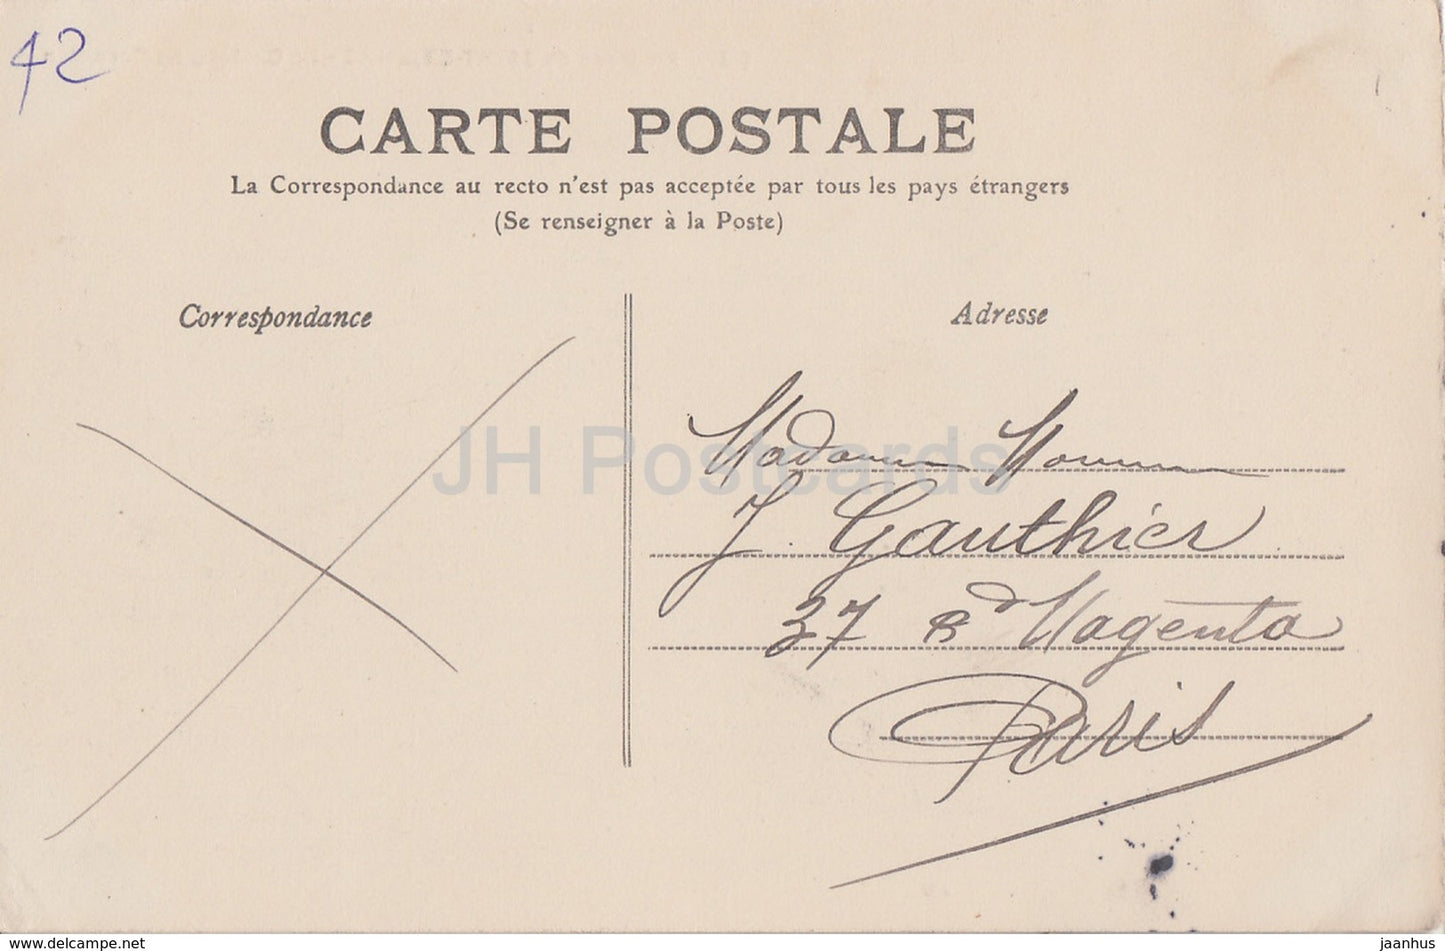 Environs de Saint Etienne - Le Château de Cornillon - château - 85 - carte postale ancienne - 1901 - France - occasion